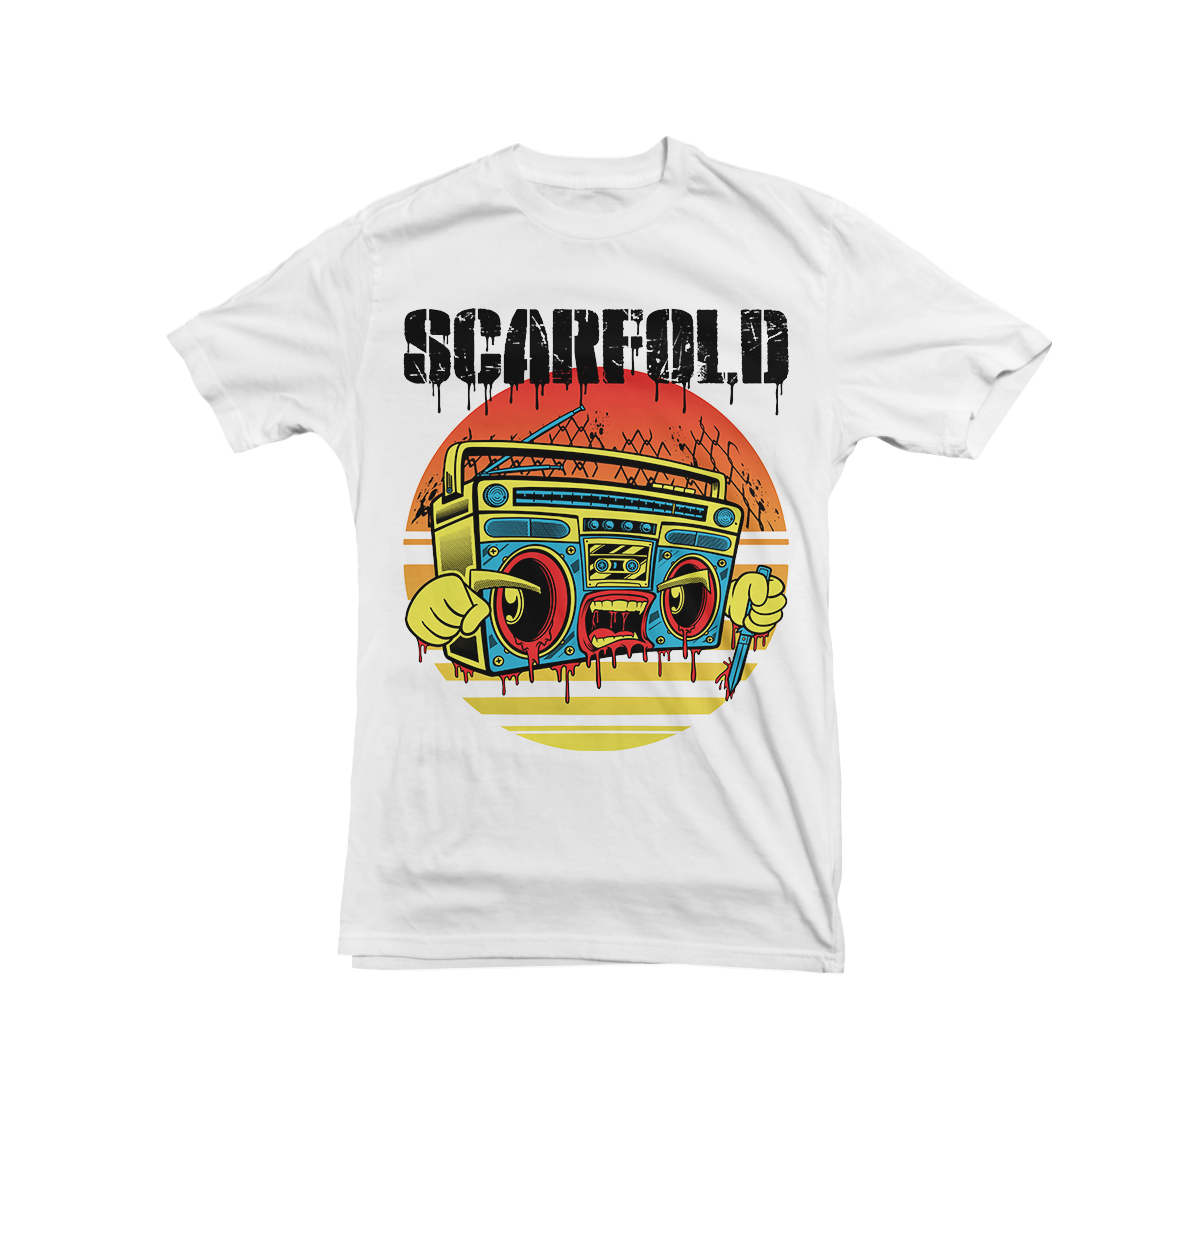 SCARFOLD - "Ghettoblaster" White T-Shirt